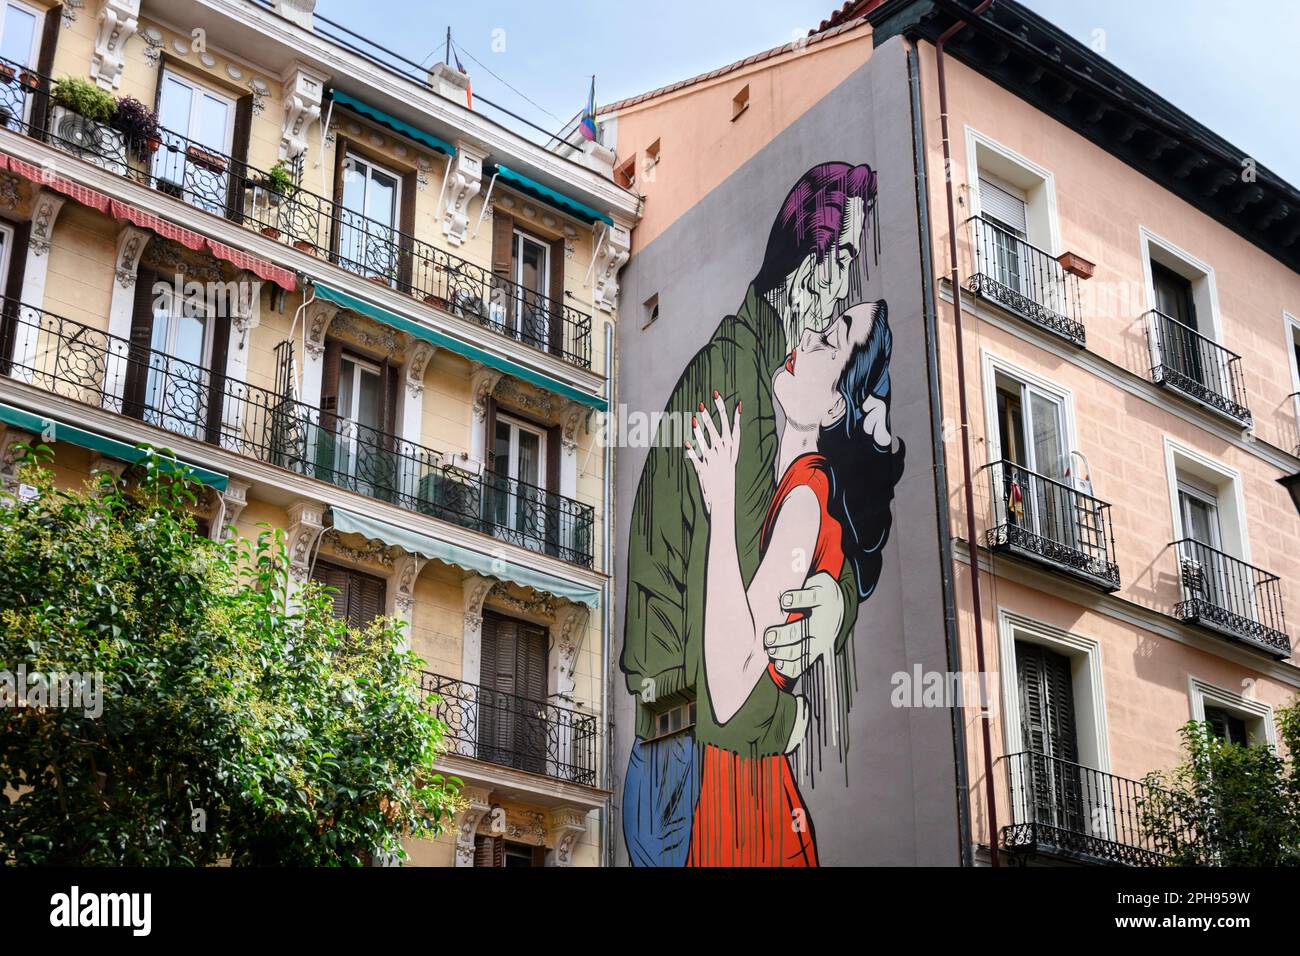 Murale chiamato Run Away dall'artista D*face su un edificio nella Calle de Embajadores, nel quartiere multiculturale di Embajadores, nel centro di Madrid, Spagna Foto Stock